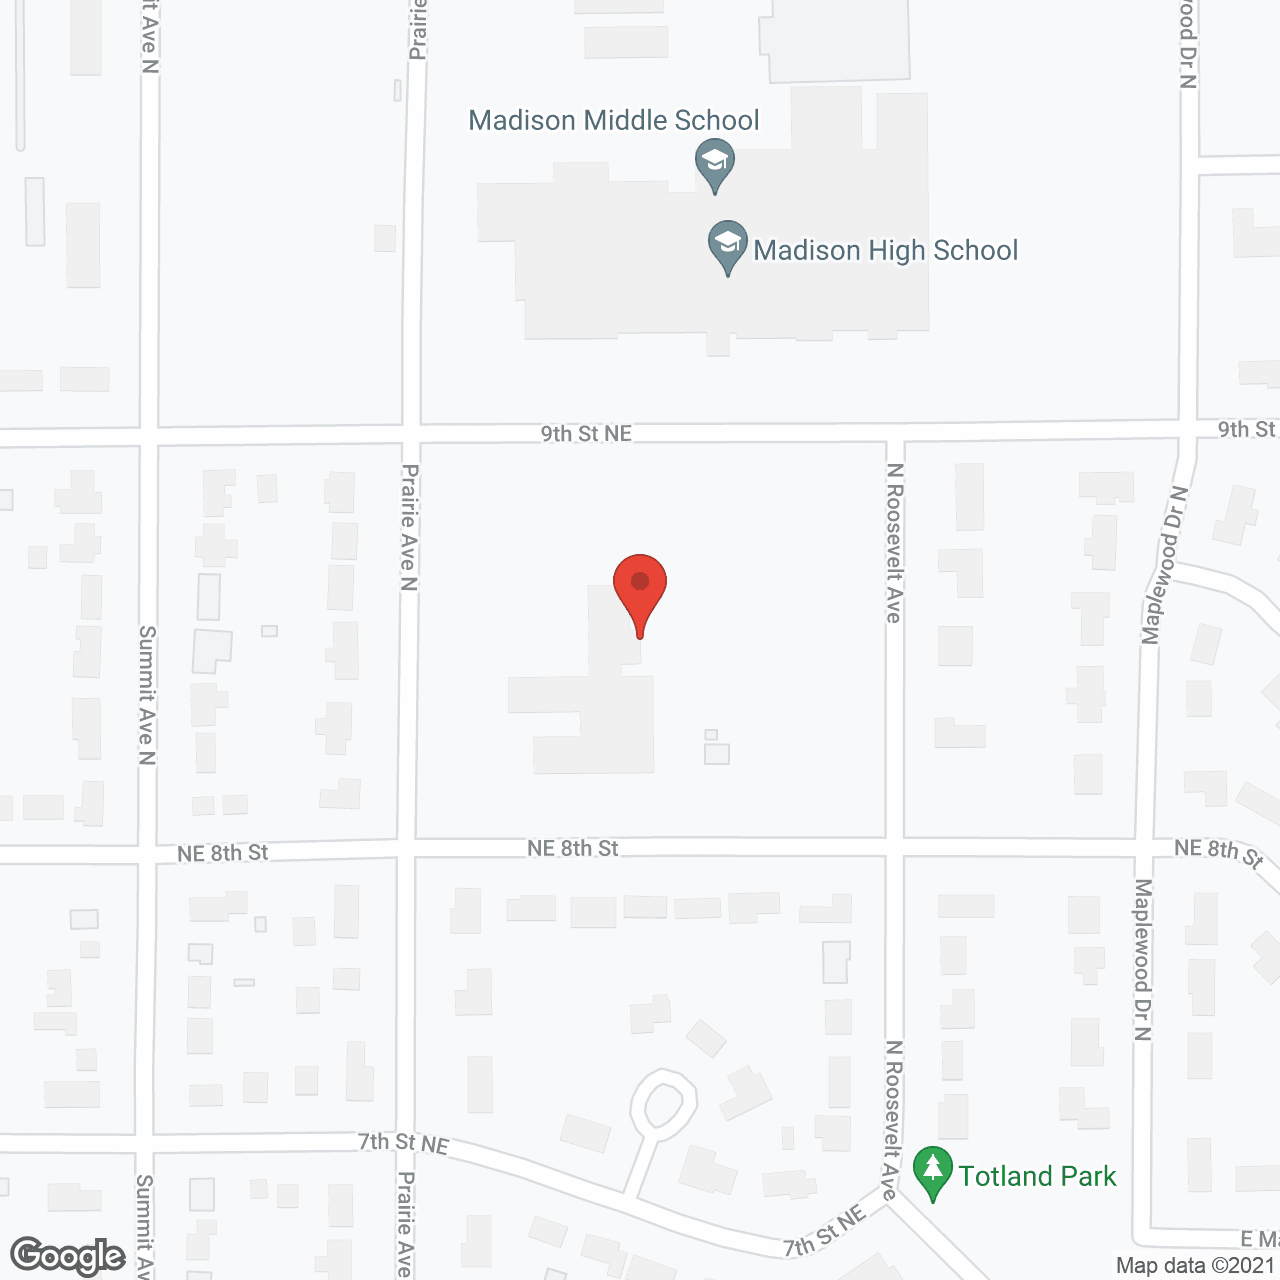 Golden LivingCenter - Madison in google map